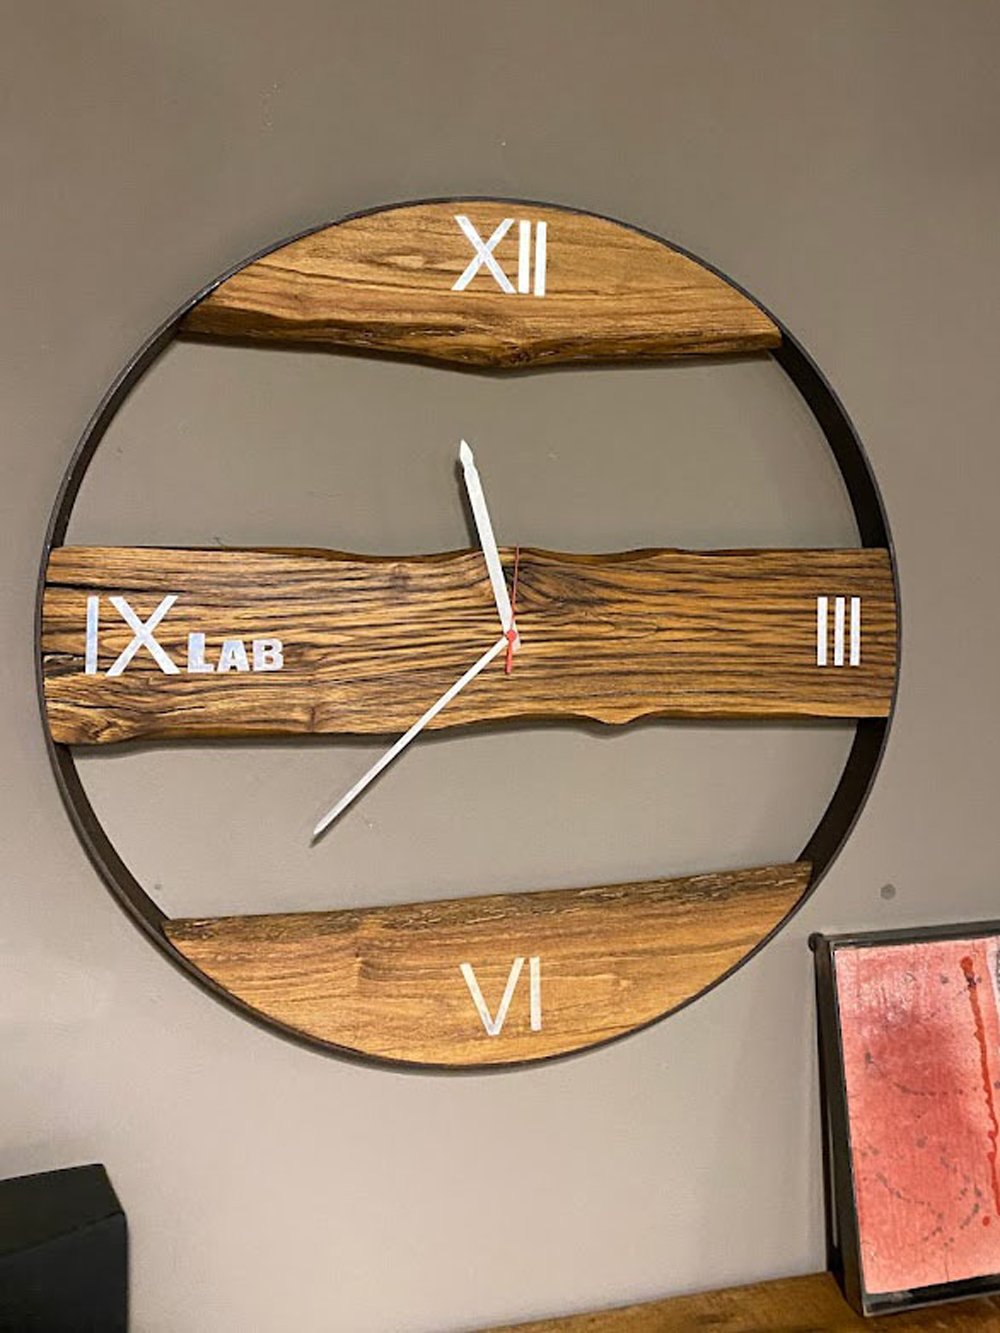 Grande orologio da parete in ferro e legno stile industriale - Robert -  XLAB Design